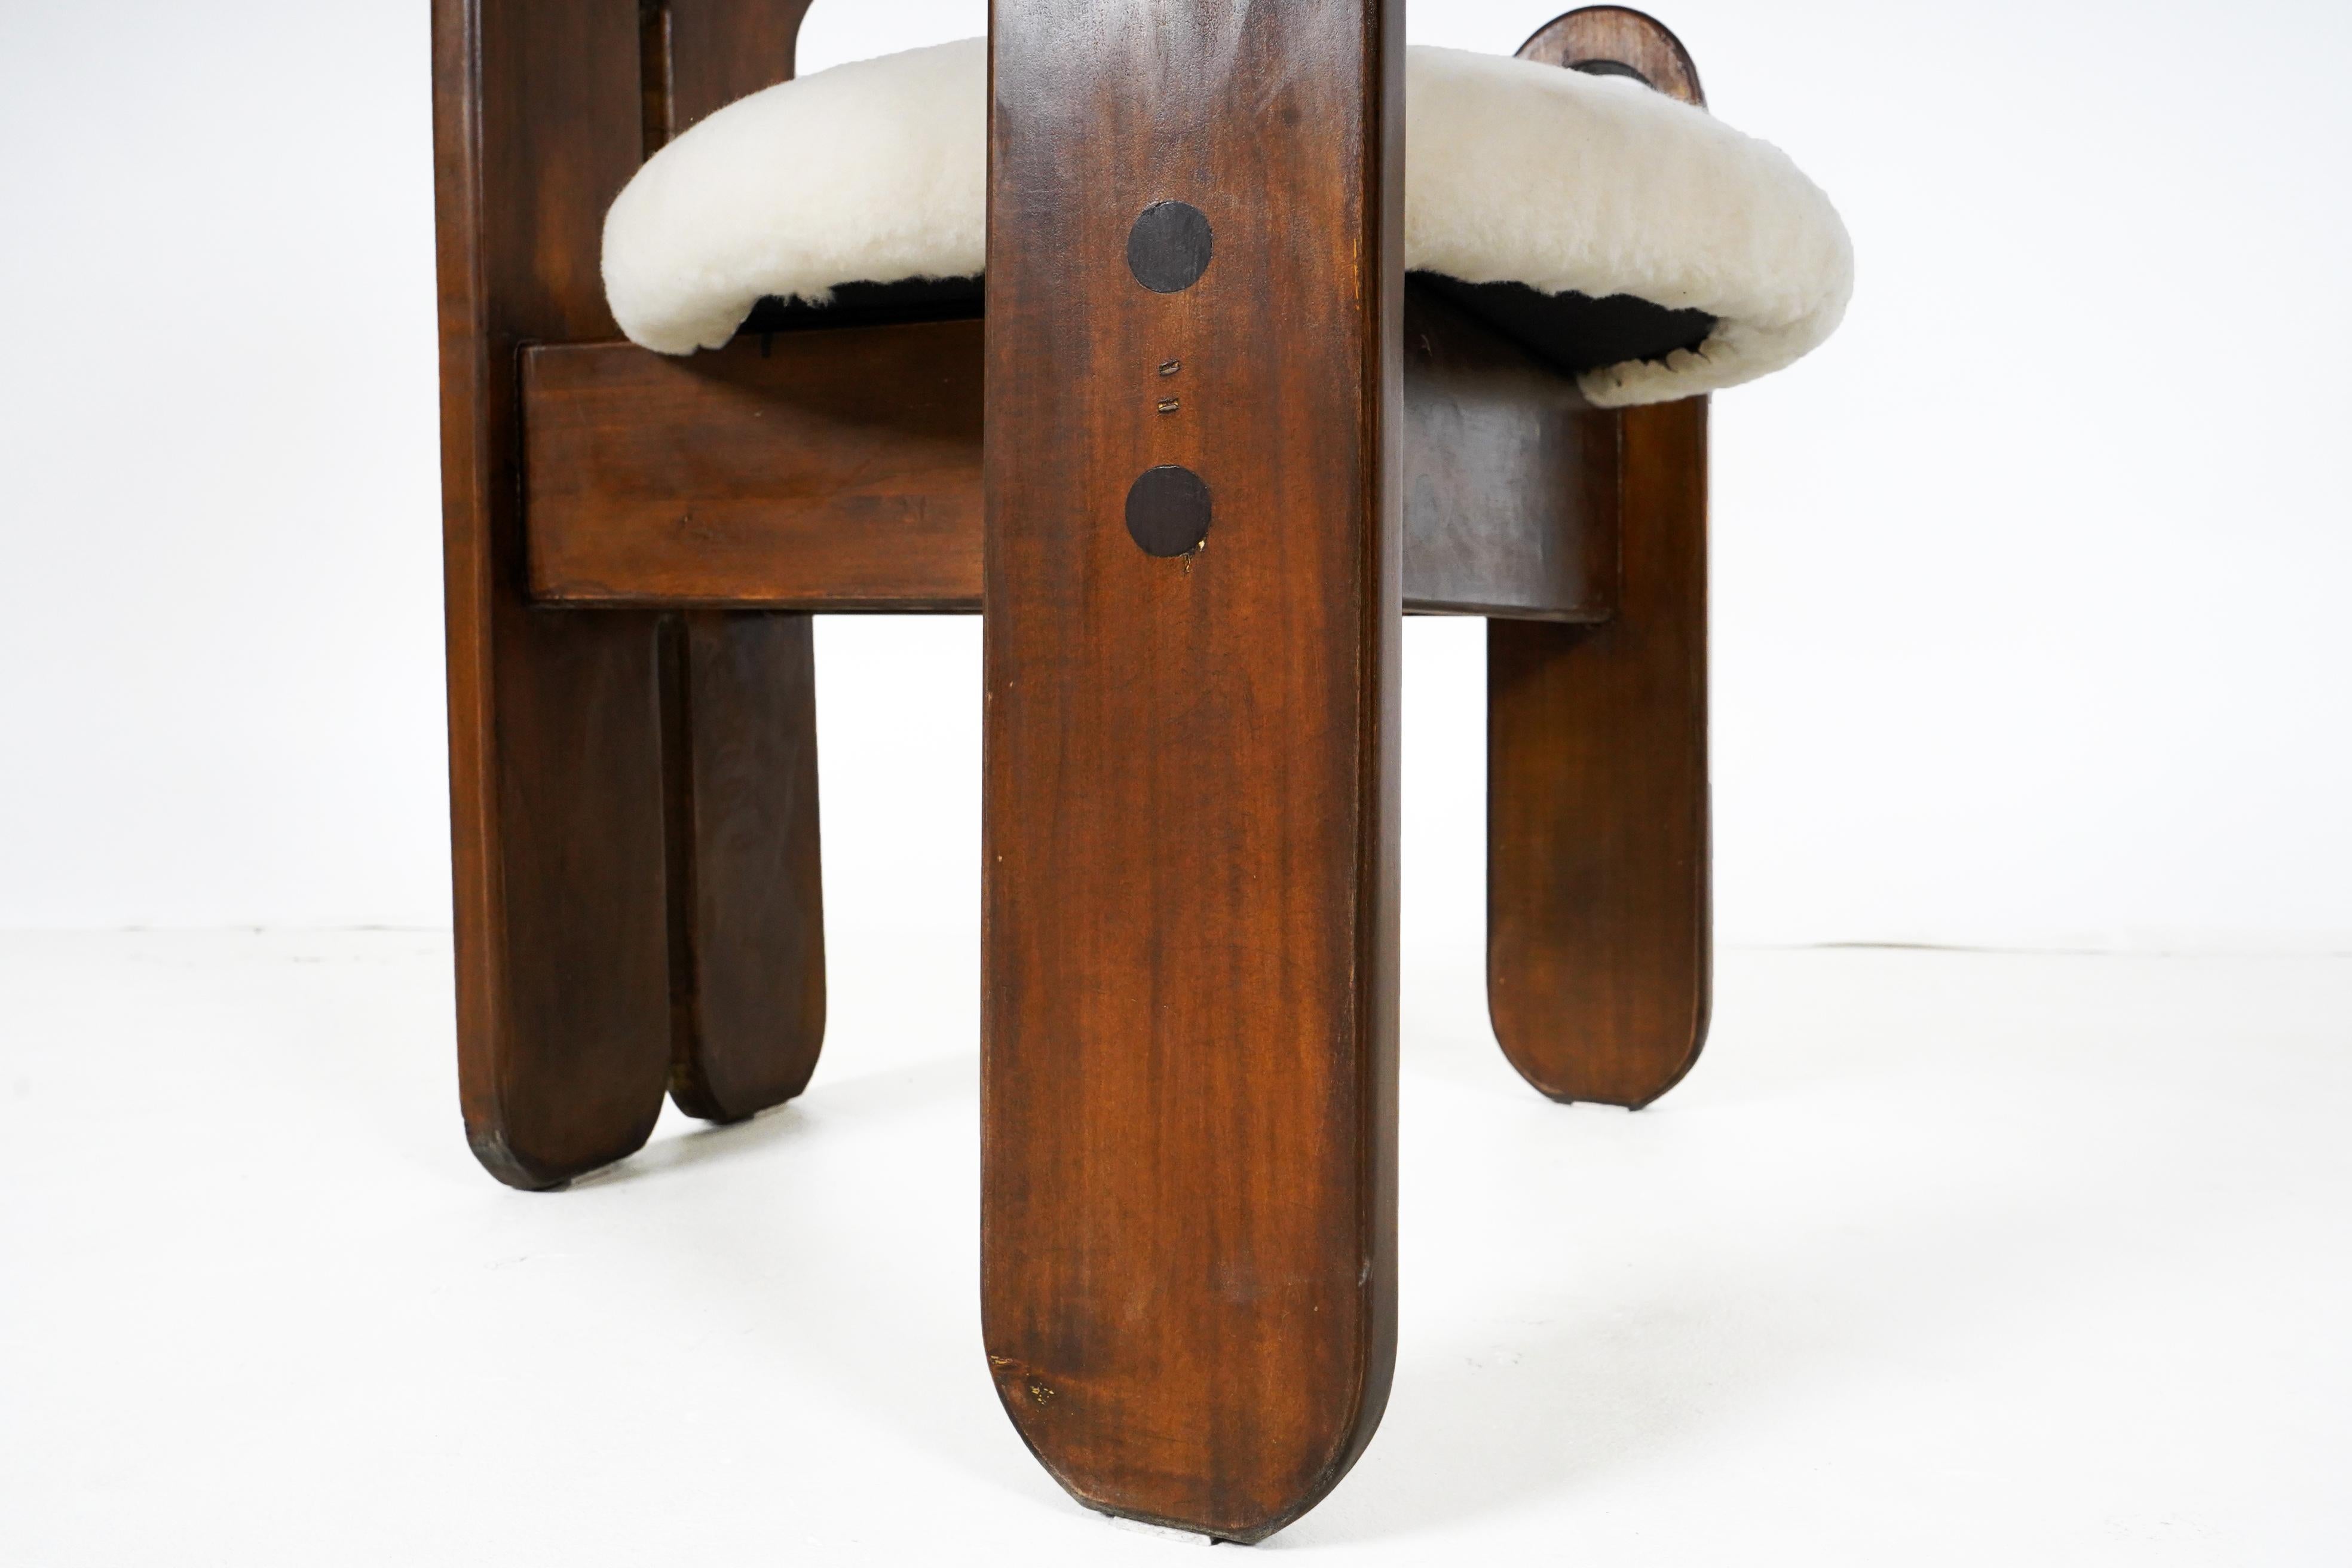 Ces fauteuils brutalistes des années 1970 proviennent de Budapest, en Hongrie. Dans les années 1960 et 1970, les fabricants de meubles hongrois ont été invités à créer des designs simples et modernes pouvant être produits en série. Ils devaient